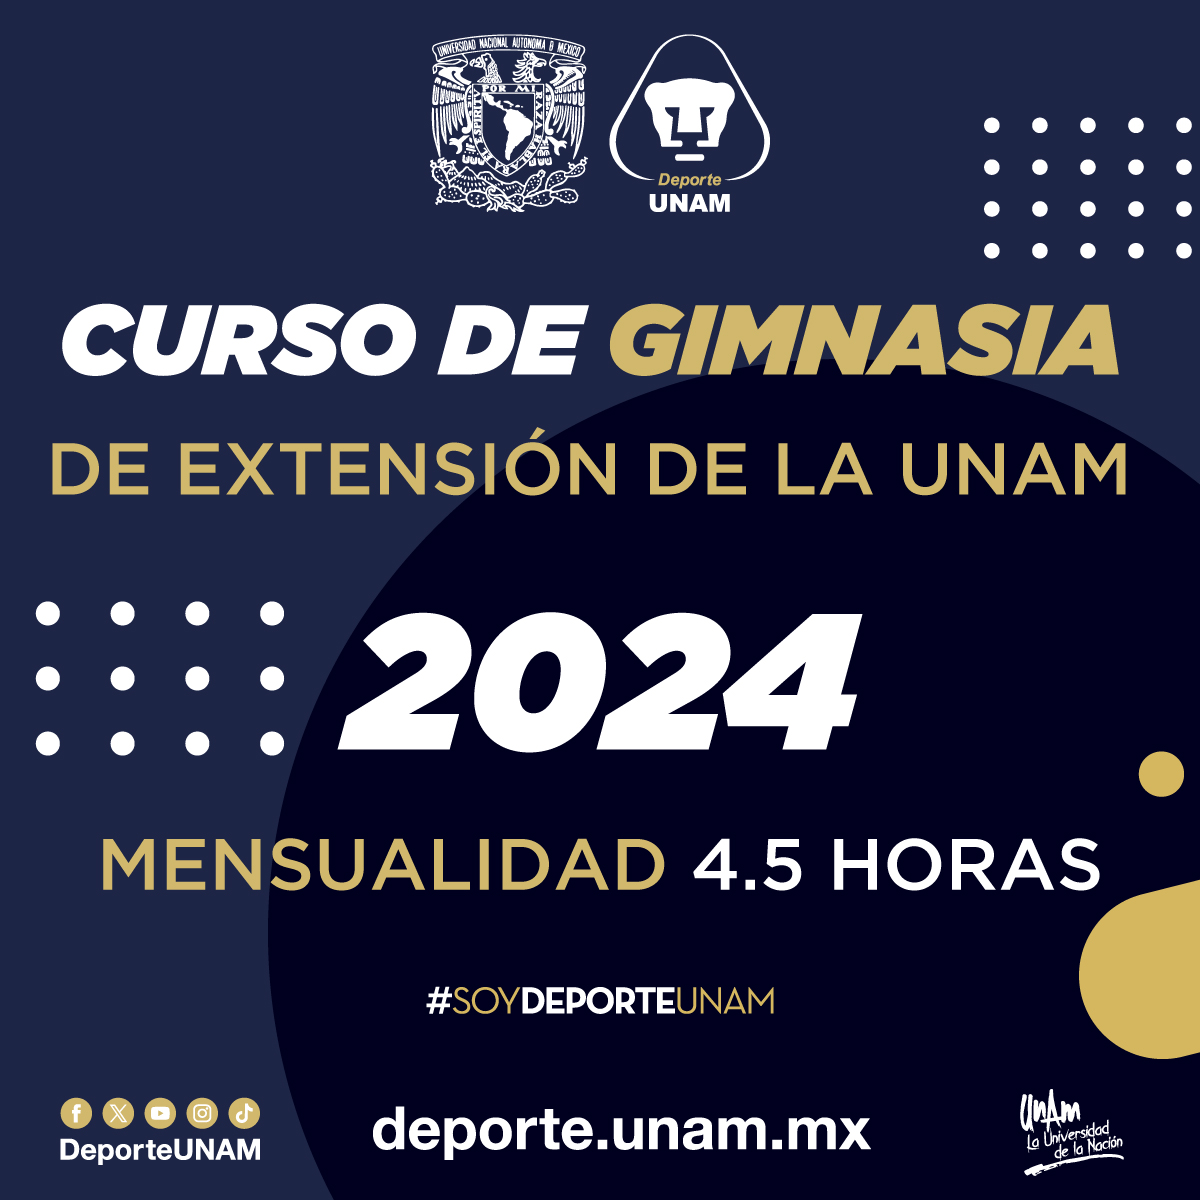 CURSO DE GIMNASIA DE EXTENSIÓN DE LA UNAM 2024 MENSUALIDAD 4.5 HORAS